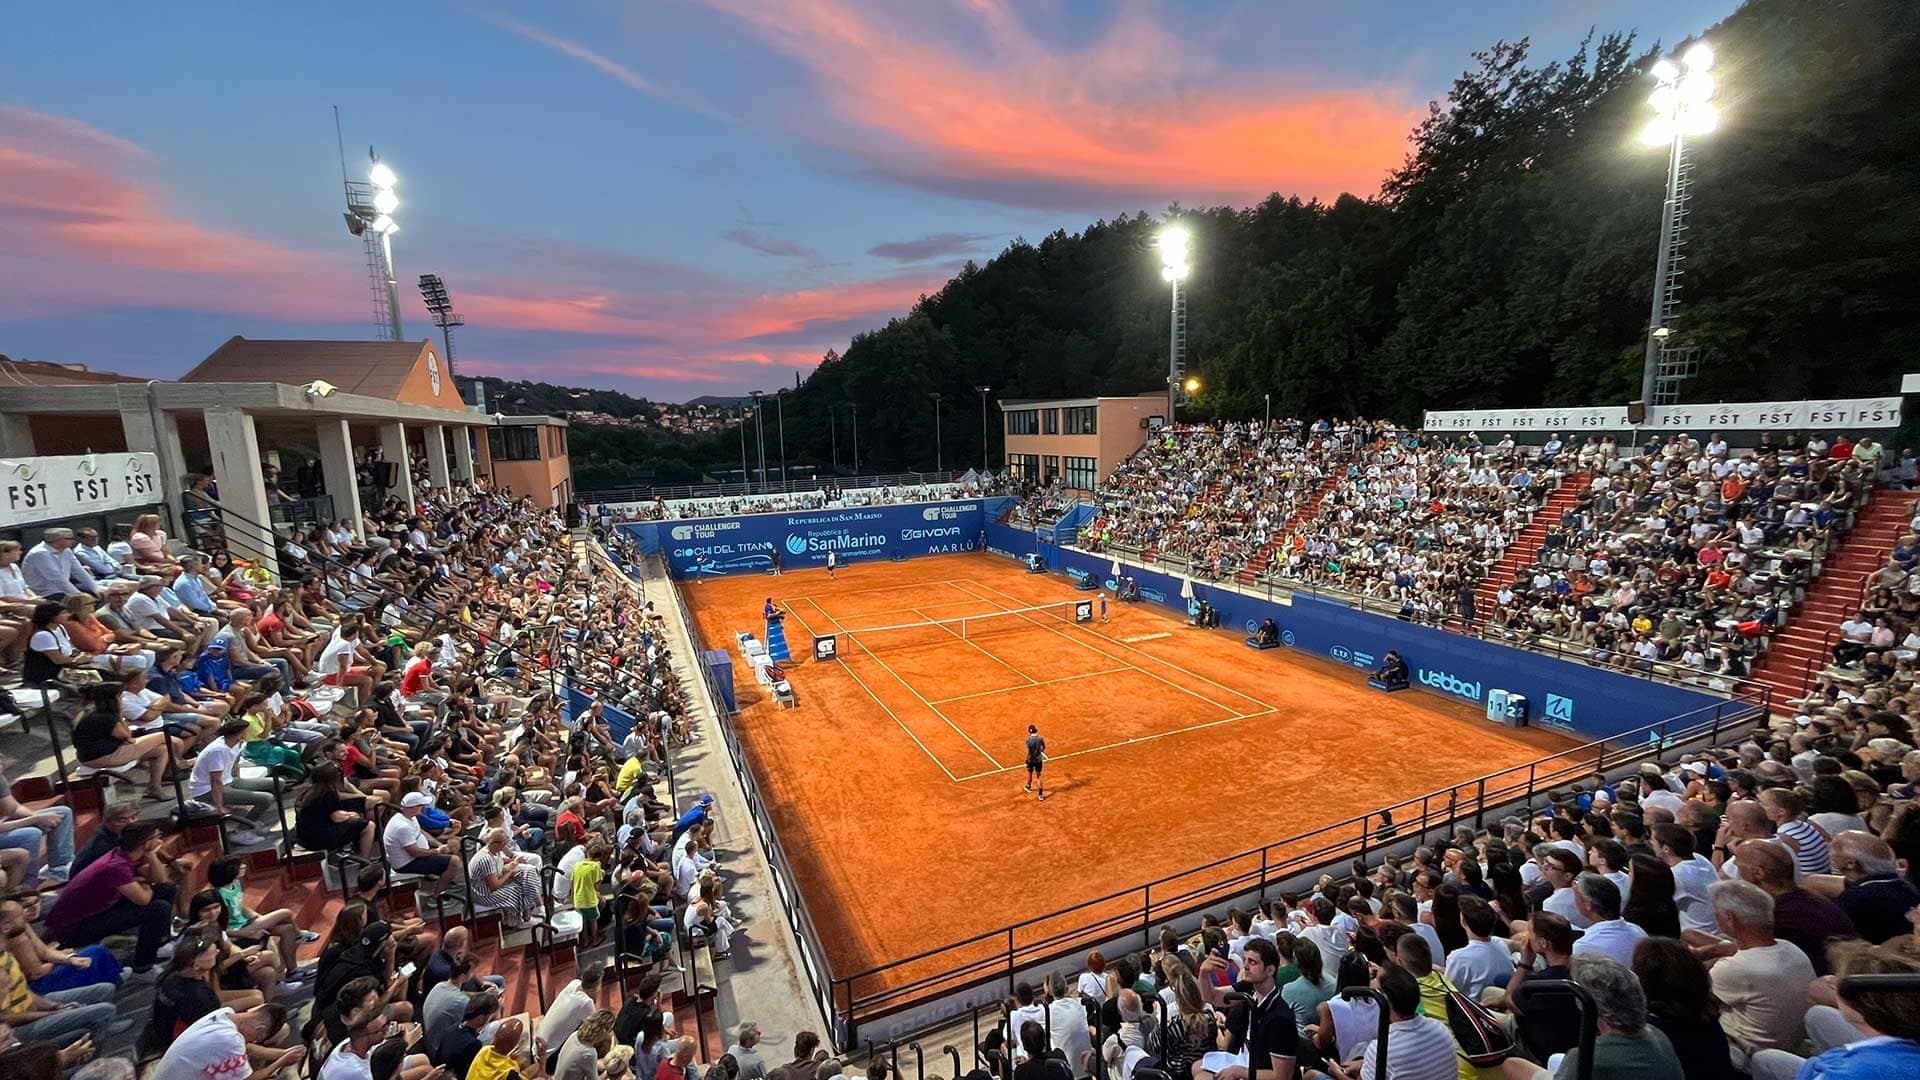 San Marino Tennis Open